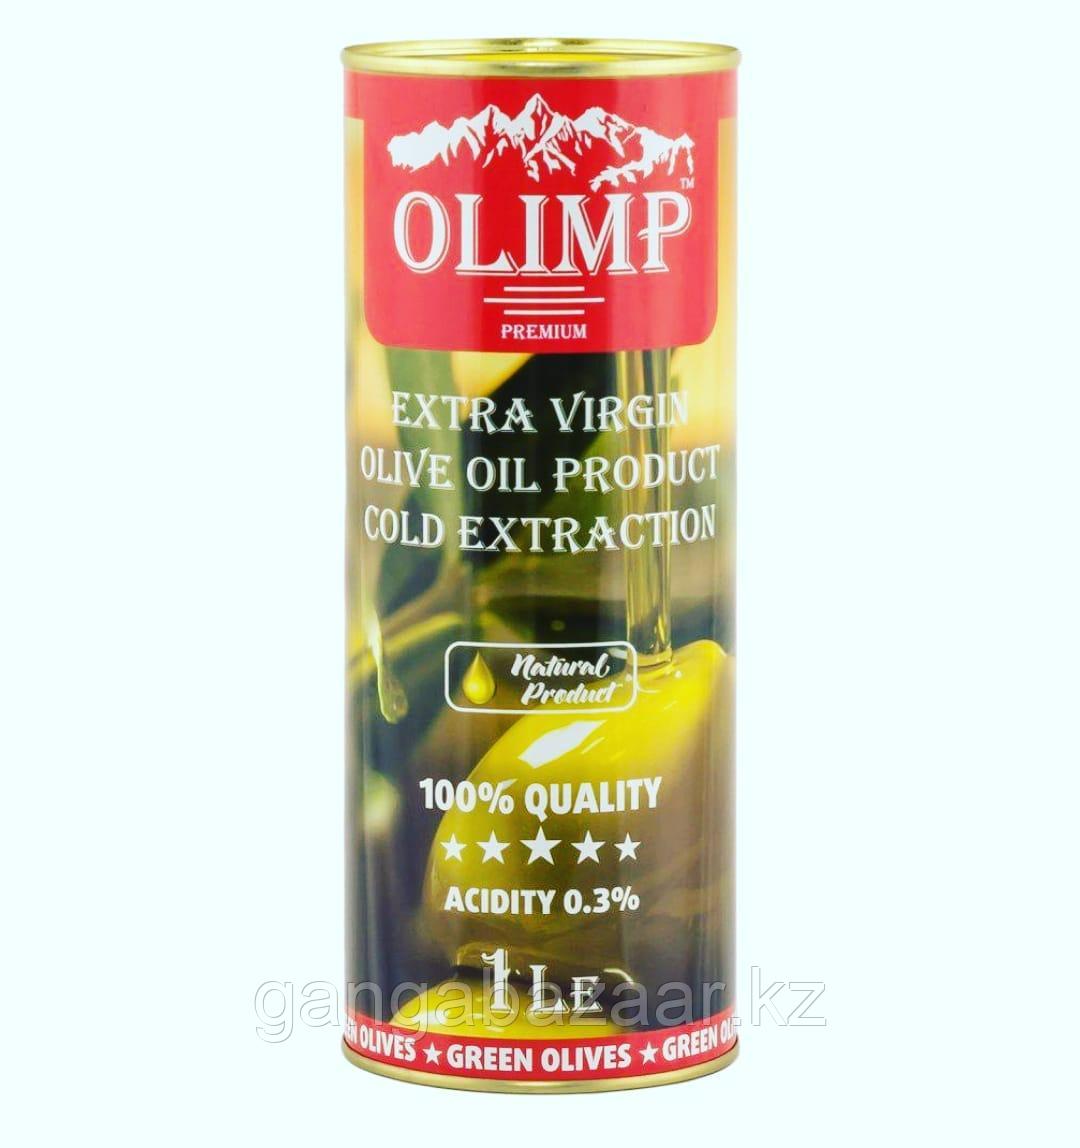 Оливковое масло "Олимп" Red Label - изысканный вкус и тонкий аромат зеленых оливок, 1 л